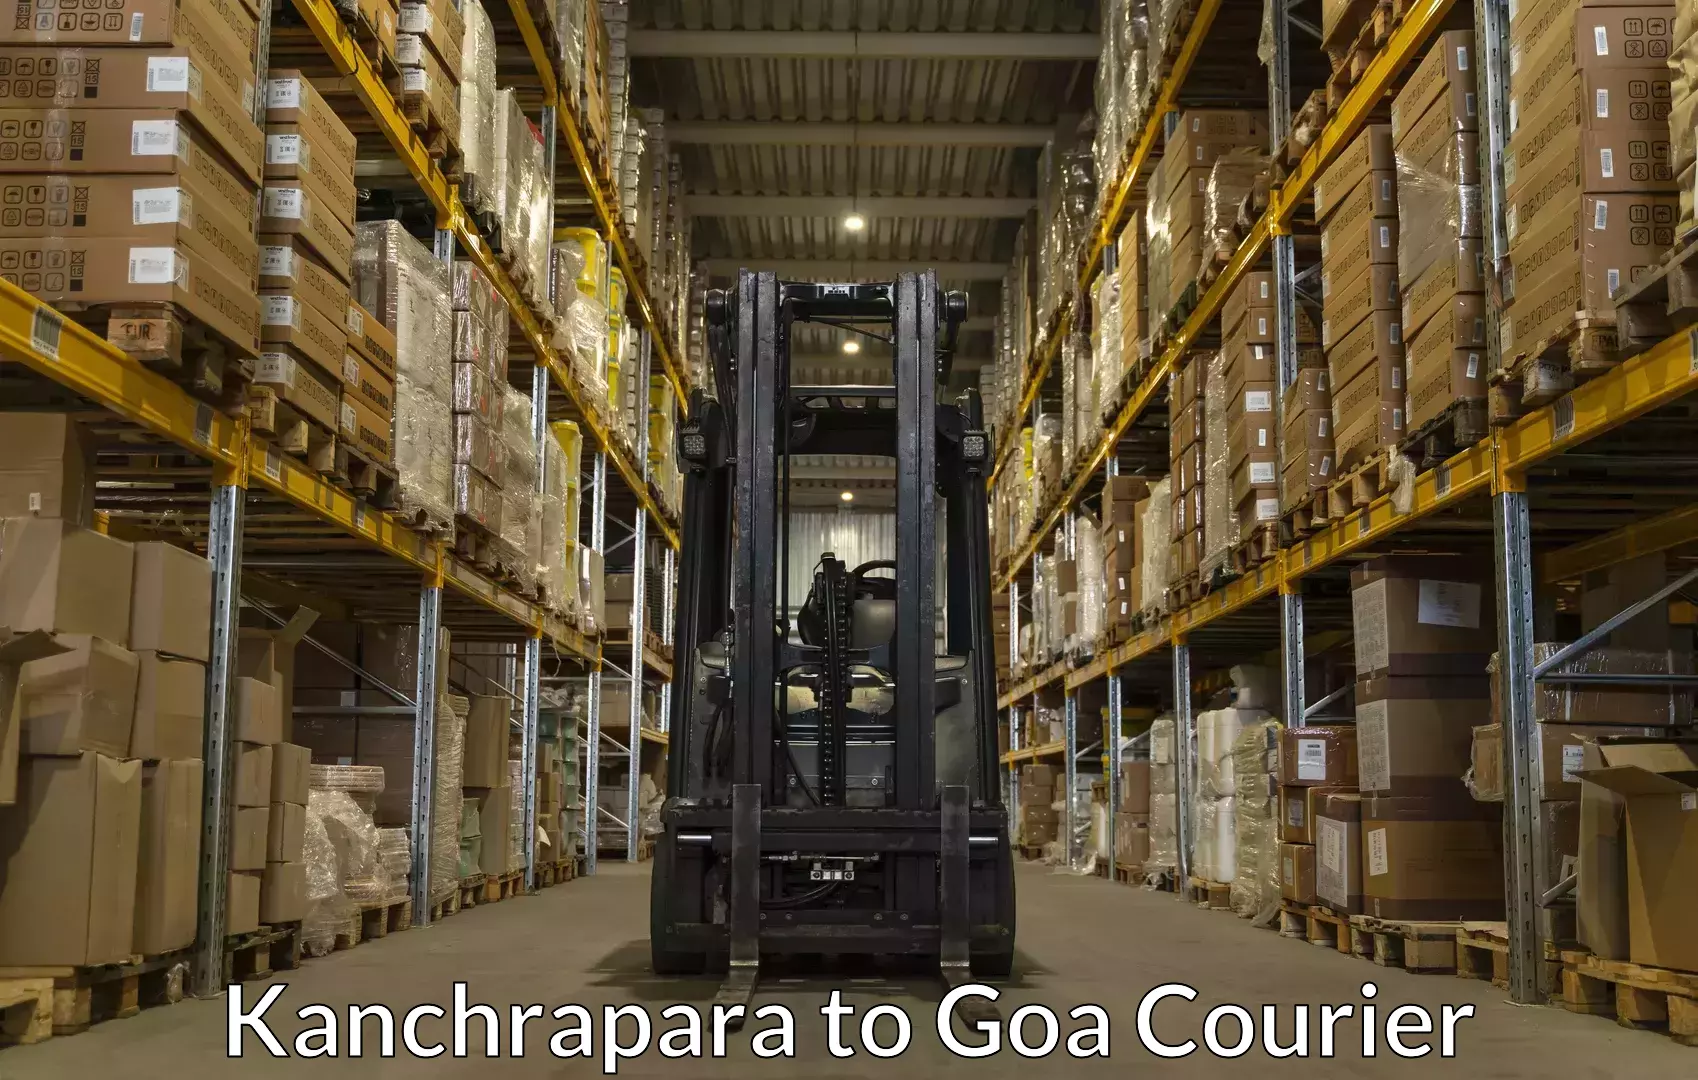 Baggage courier advice Kanchrapara to Goa